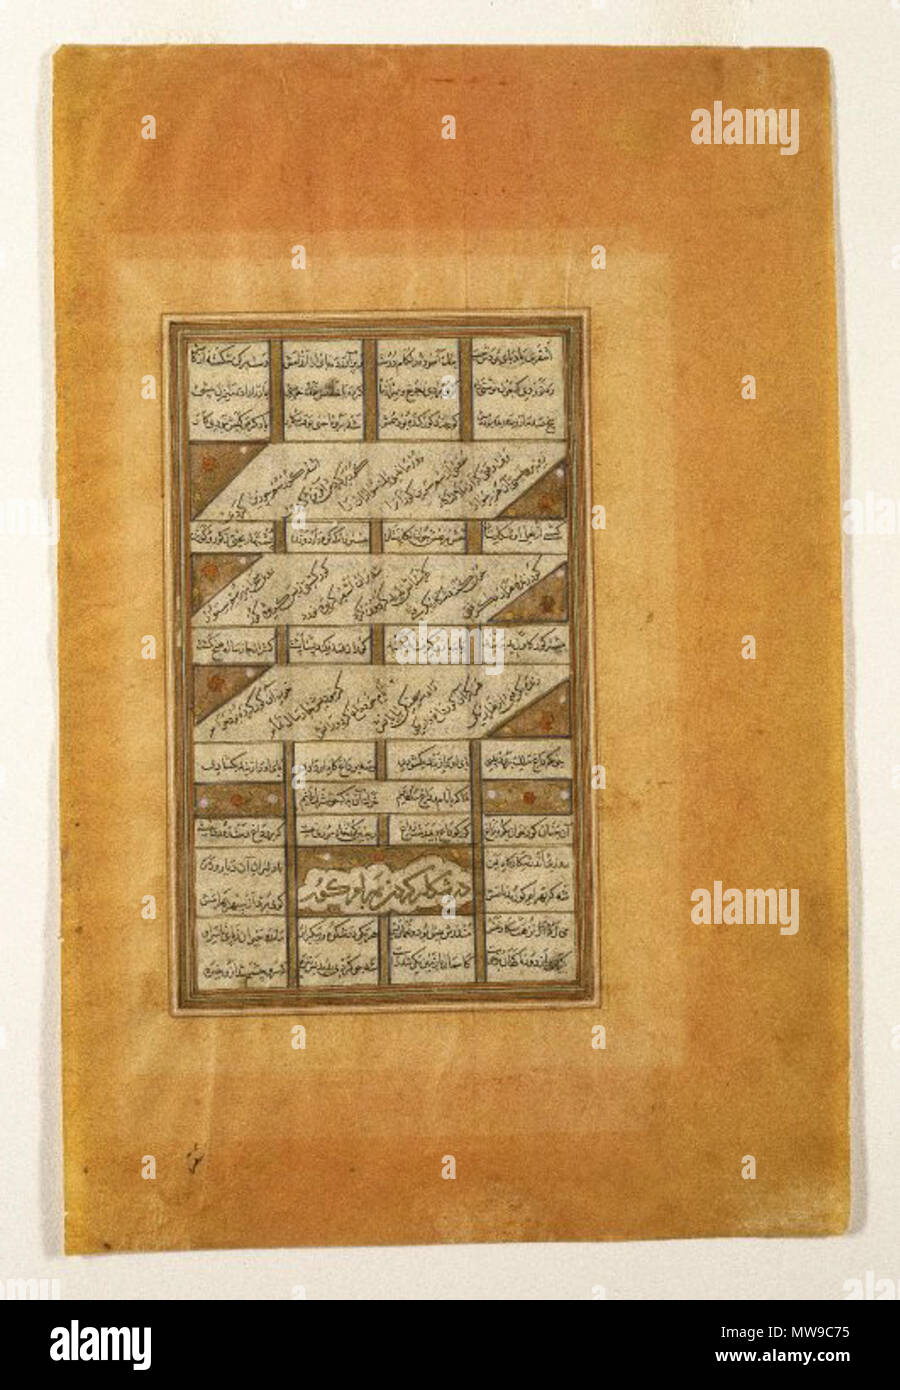 . Bahram Gur bei der Jagd, Seite aus der Haft paykar (Sieben Porträts), eine aus dem Manuskript der Khamsa (Quintett) von Nizami (d. 1209). ca. 1447 99 Brooklyn Museum - Bahram Gur bei der Jagd Seite aus der Haft paykar (Sieben Porträts) von einem Manuskript der Khamsa (Quintett) von Nizami (d. 1209) Stockfoto